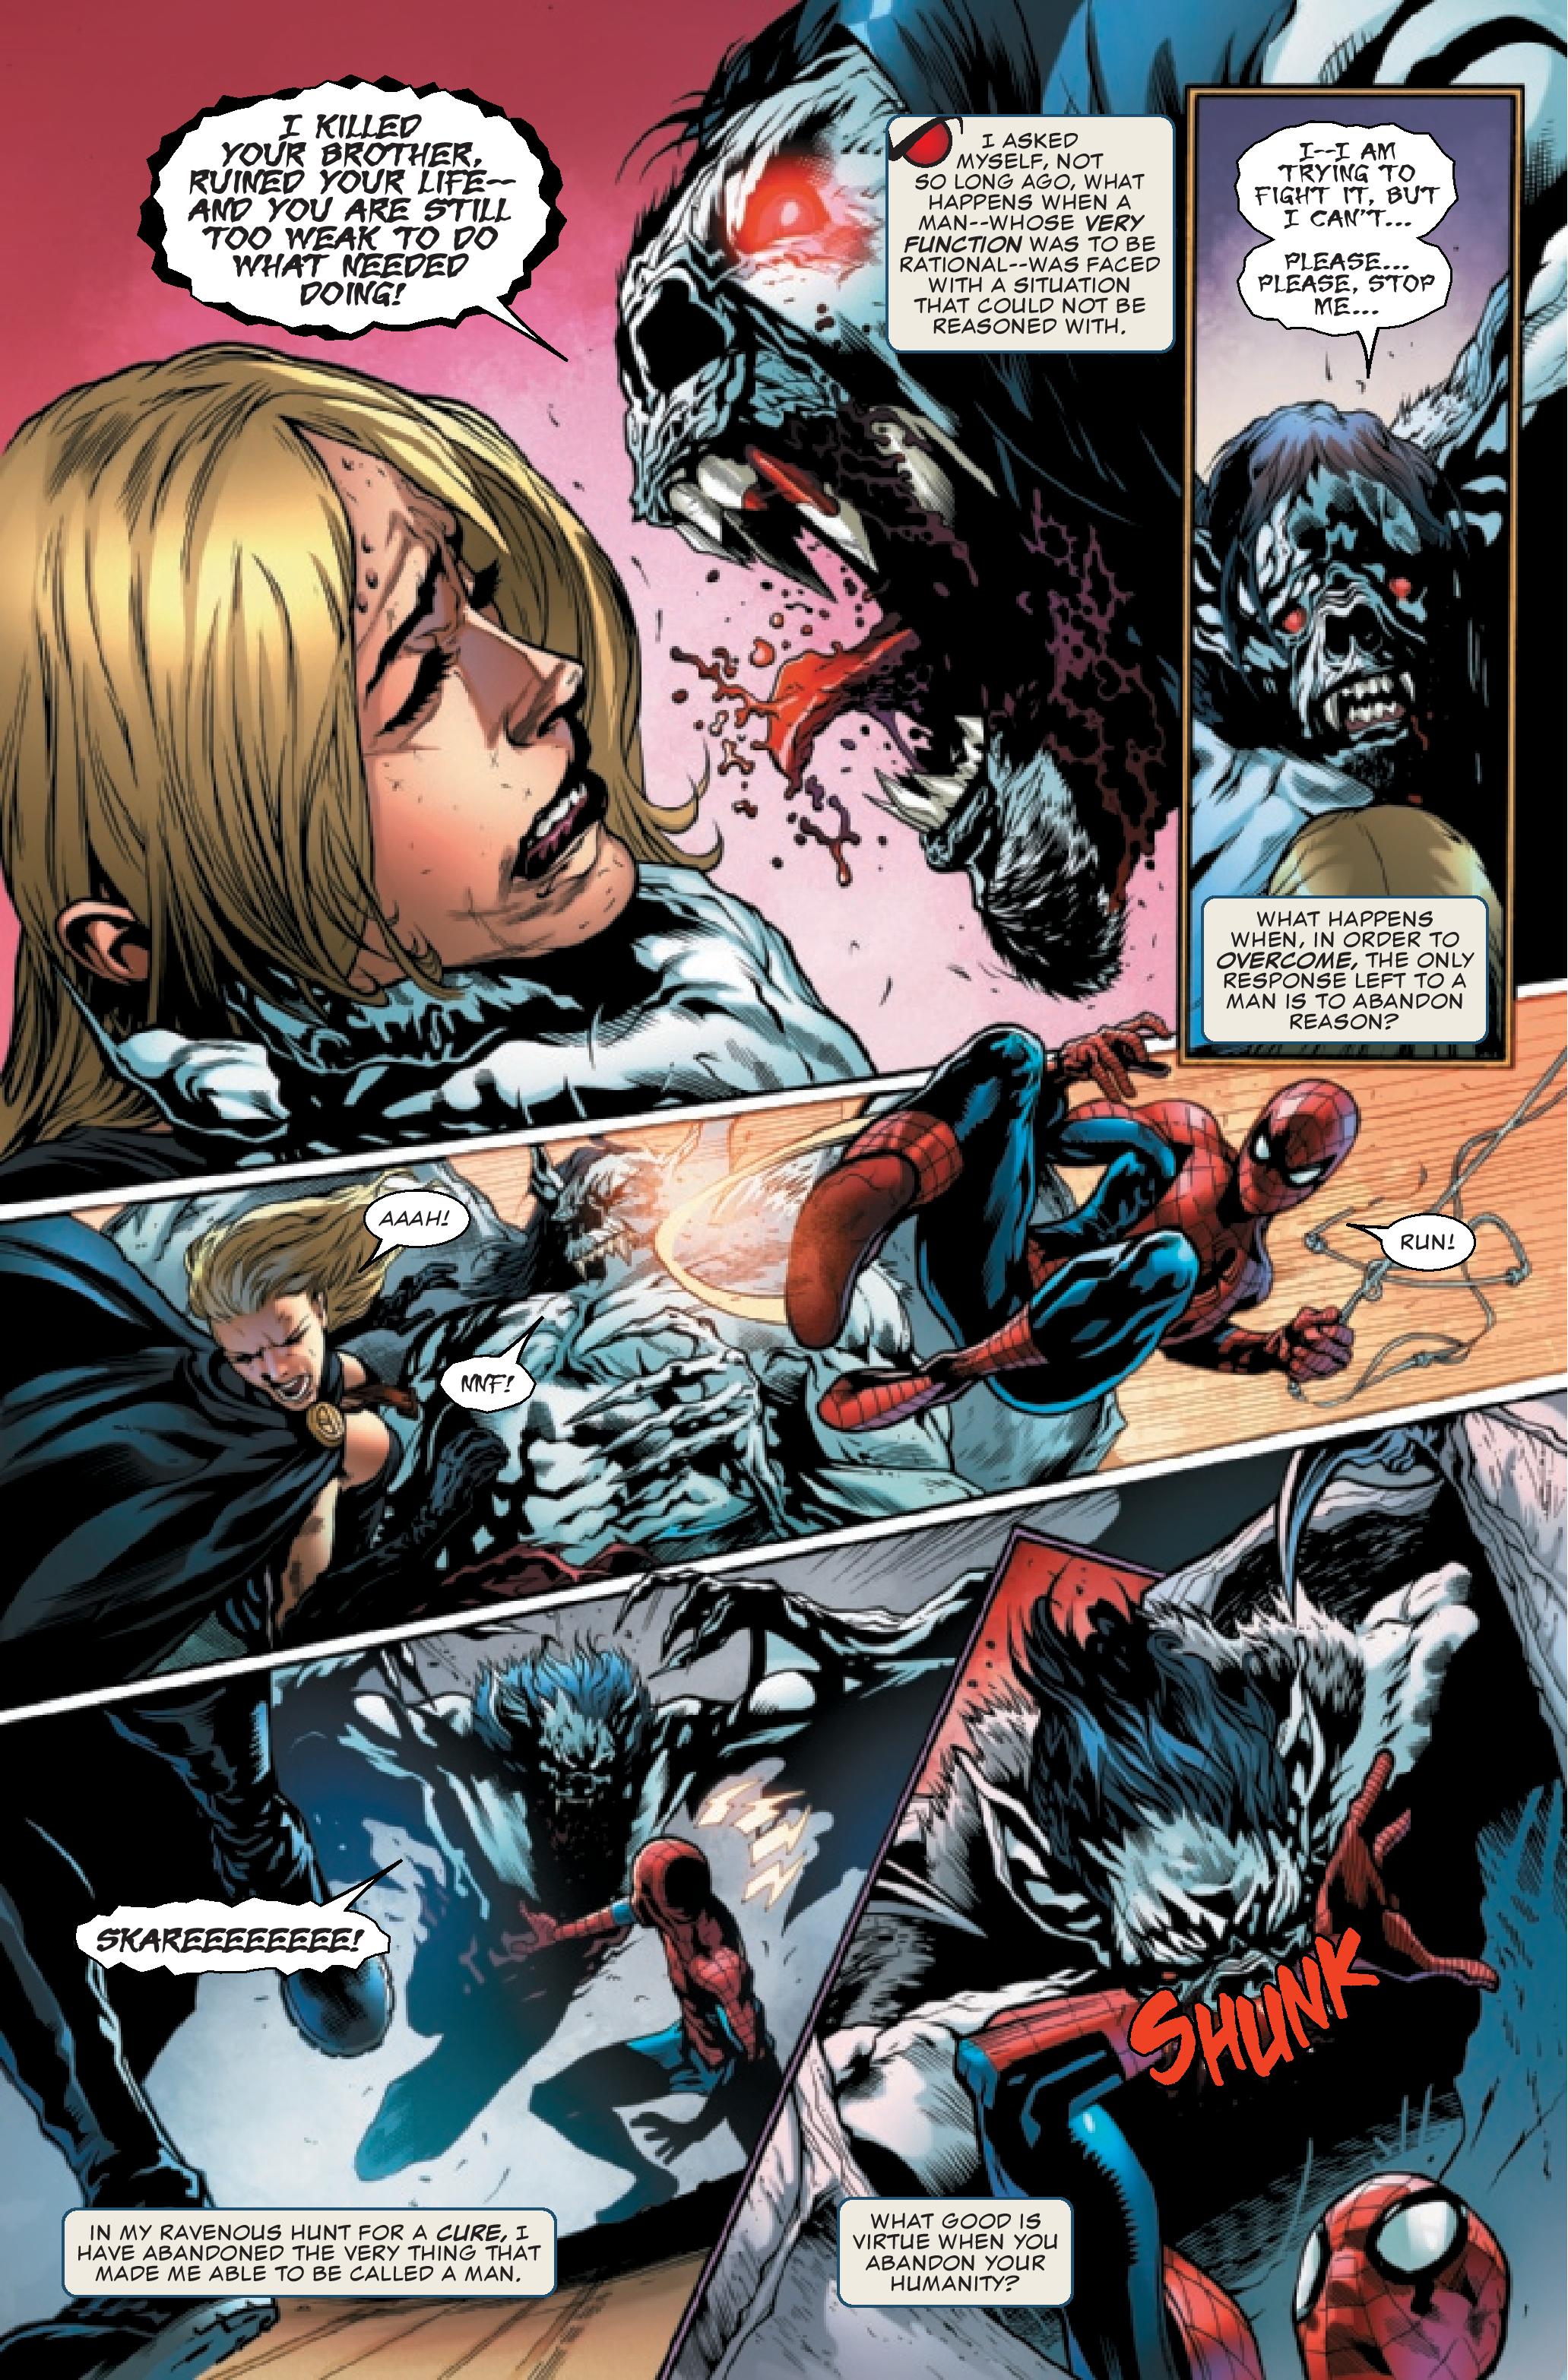 Morbius #5